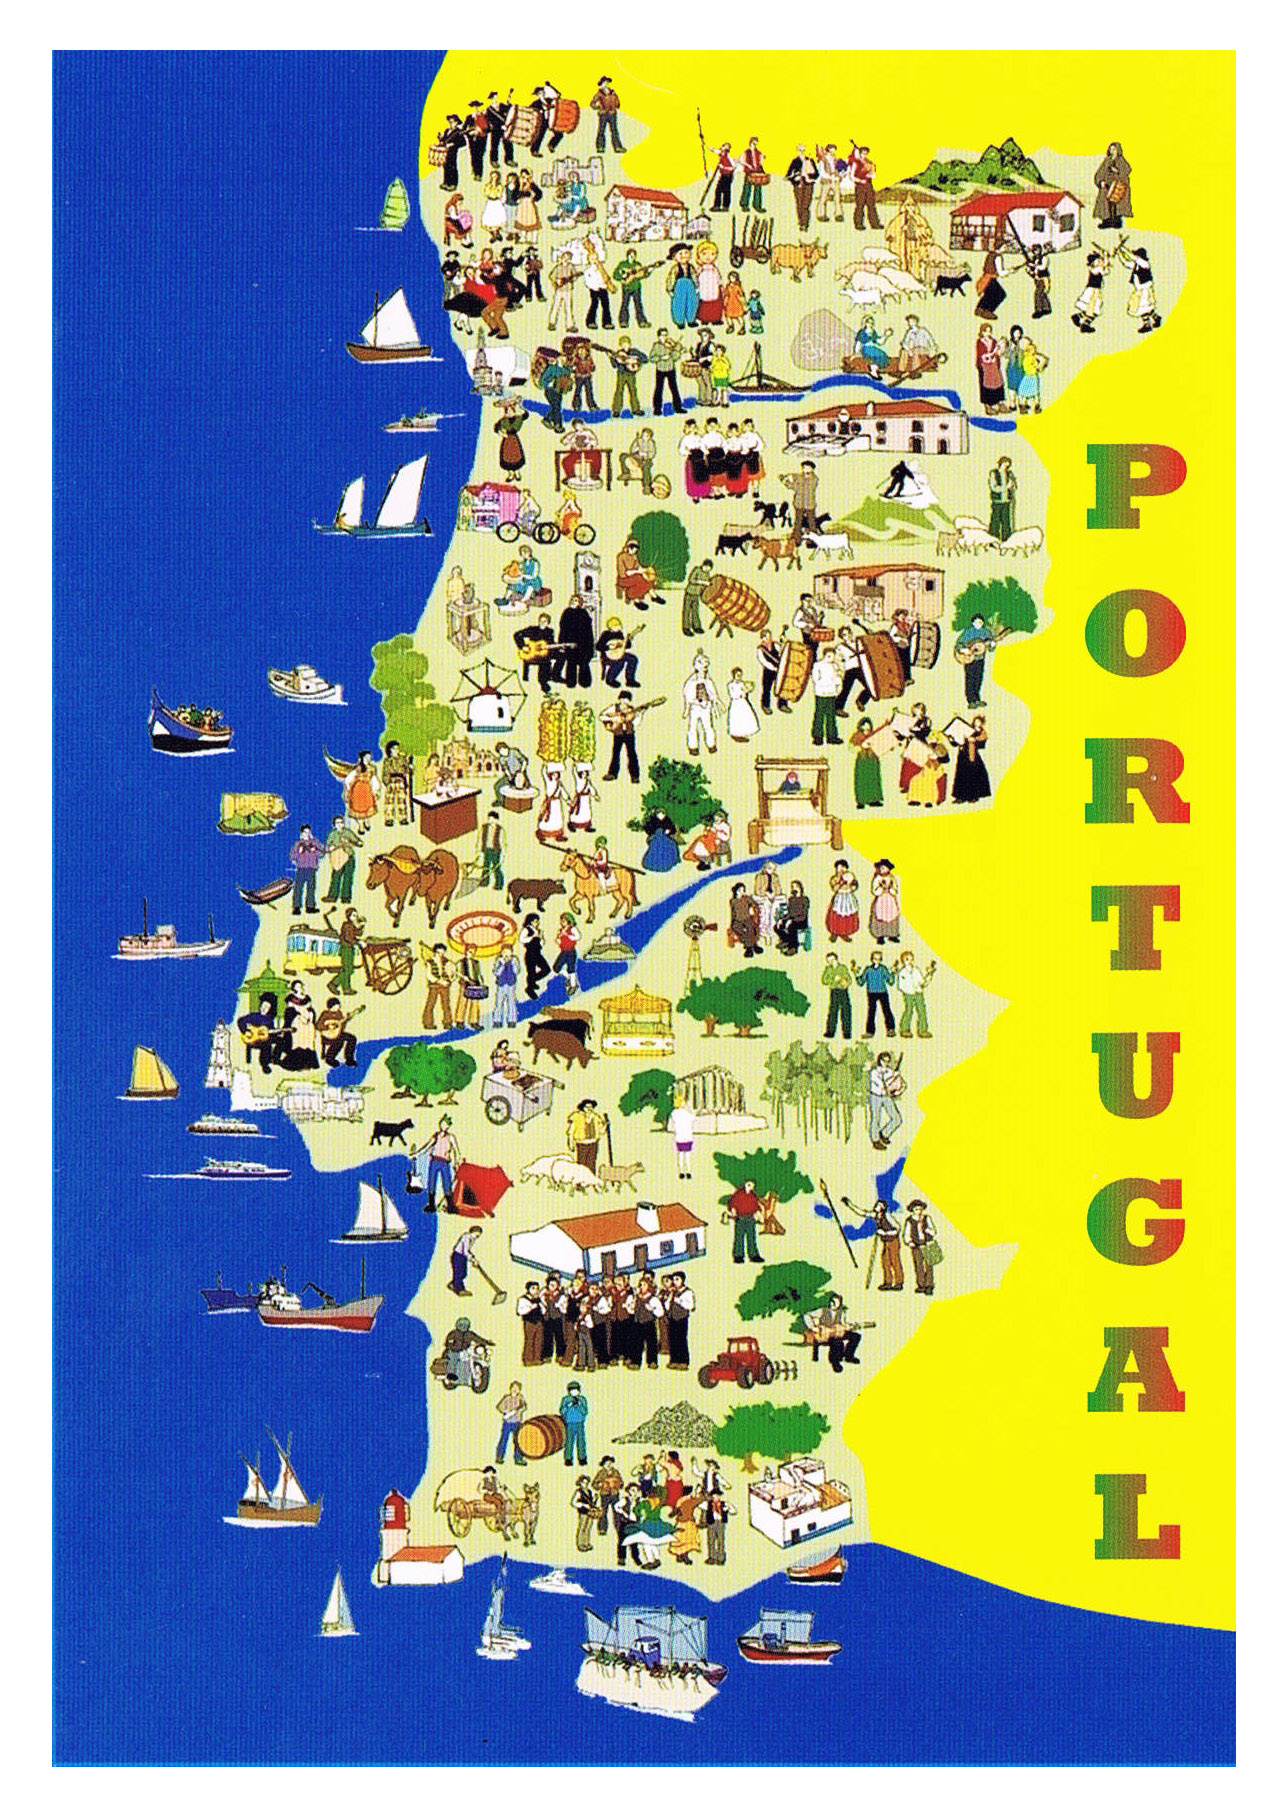 Mapas de Portugal para imprimir y que los niños descubran este país - Etapa  Infantil